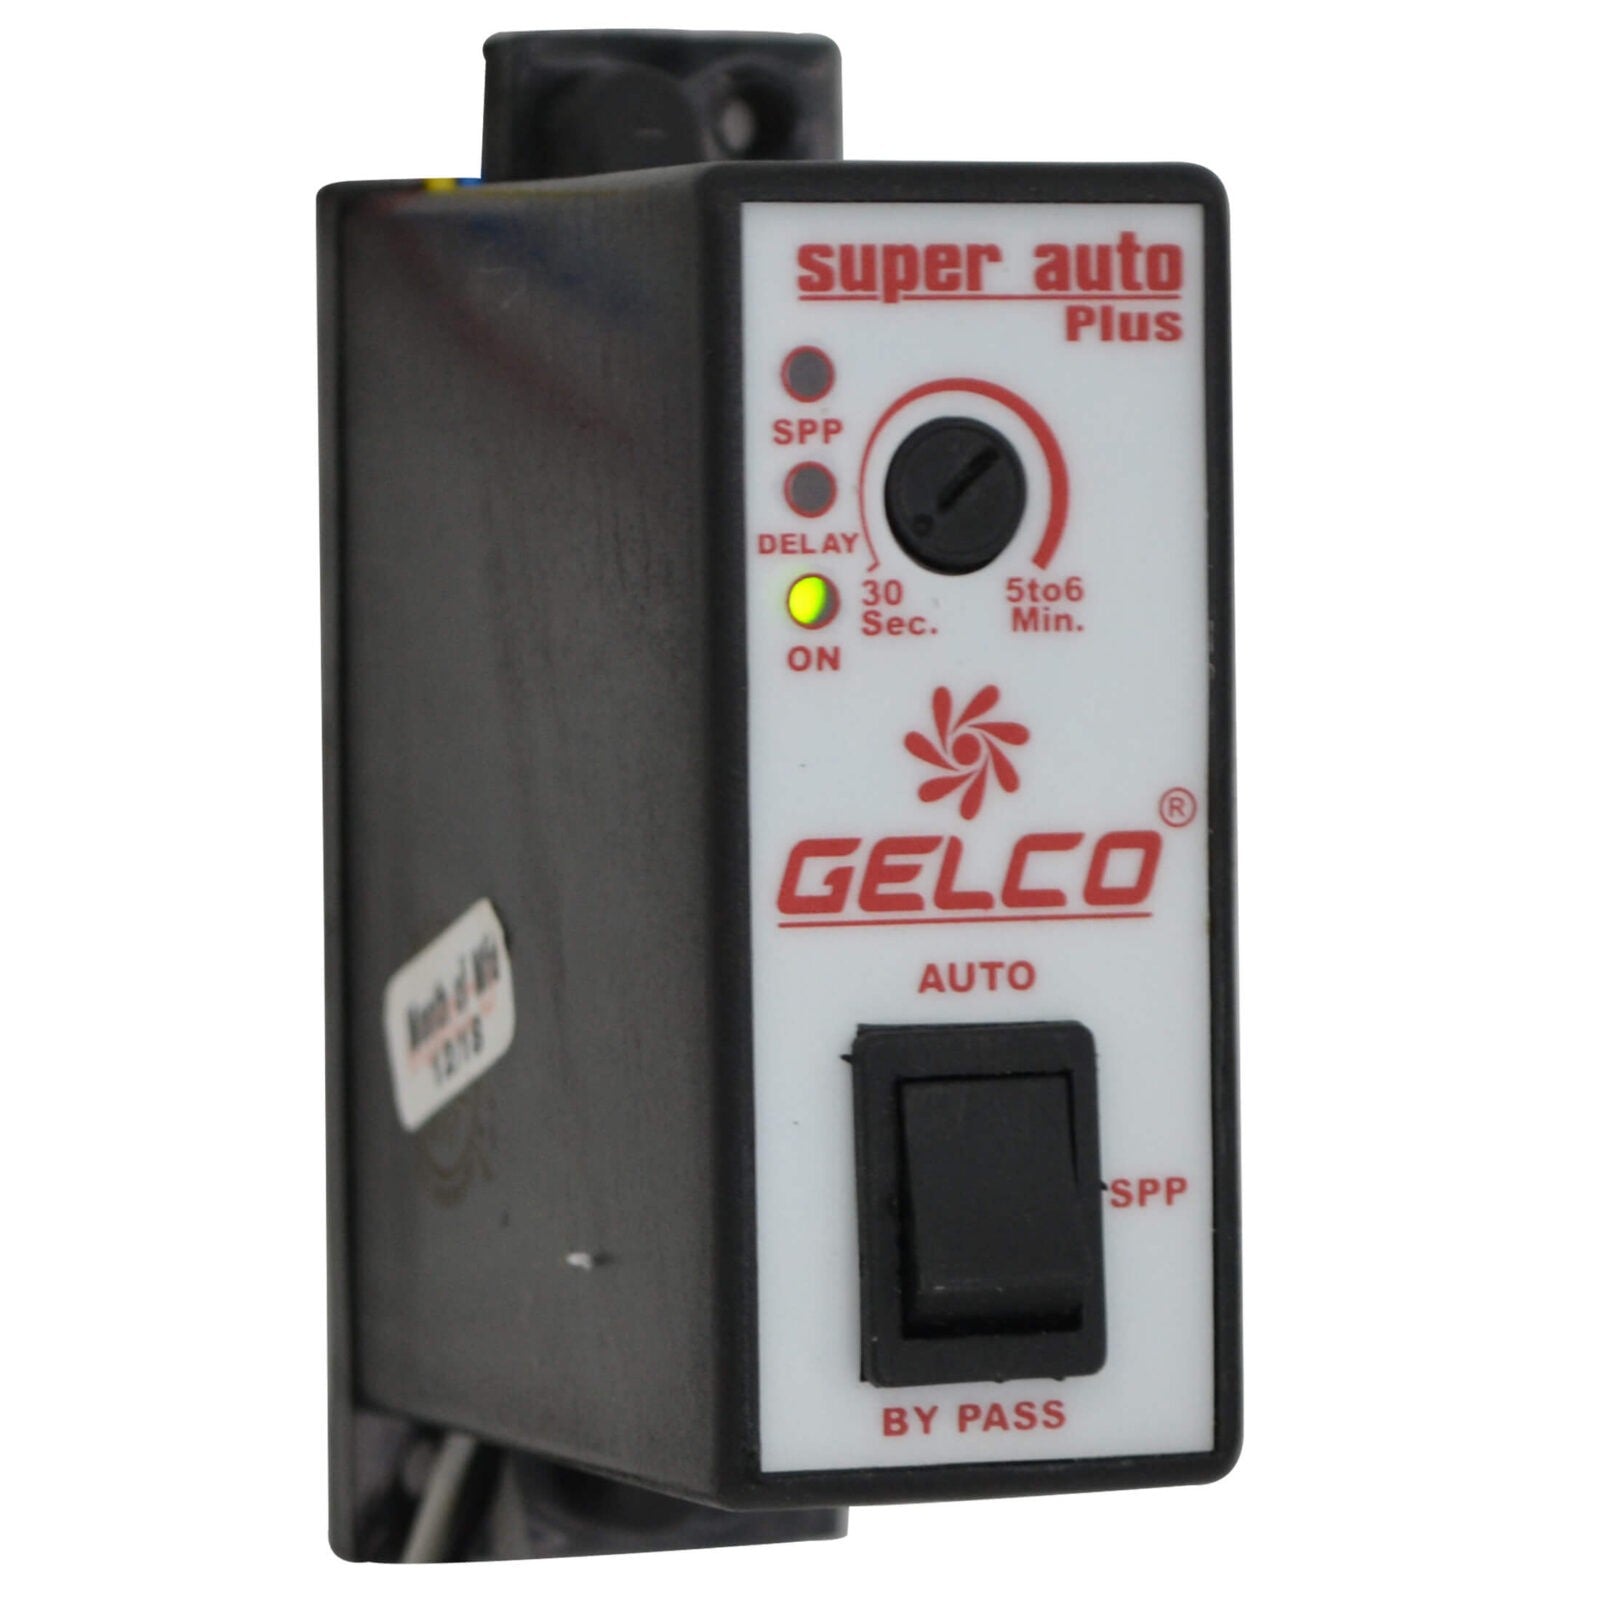 Super Auto Plus - Gelco Electronics Pvt. Ltd.